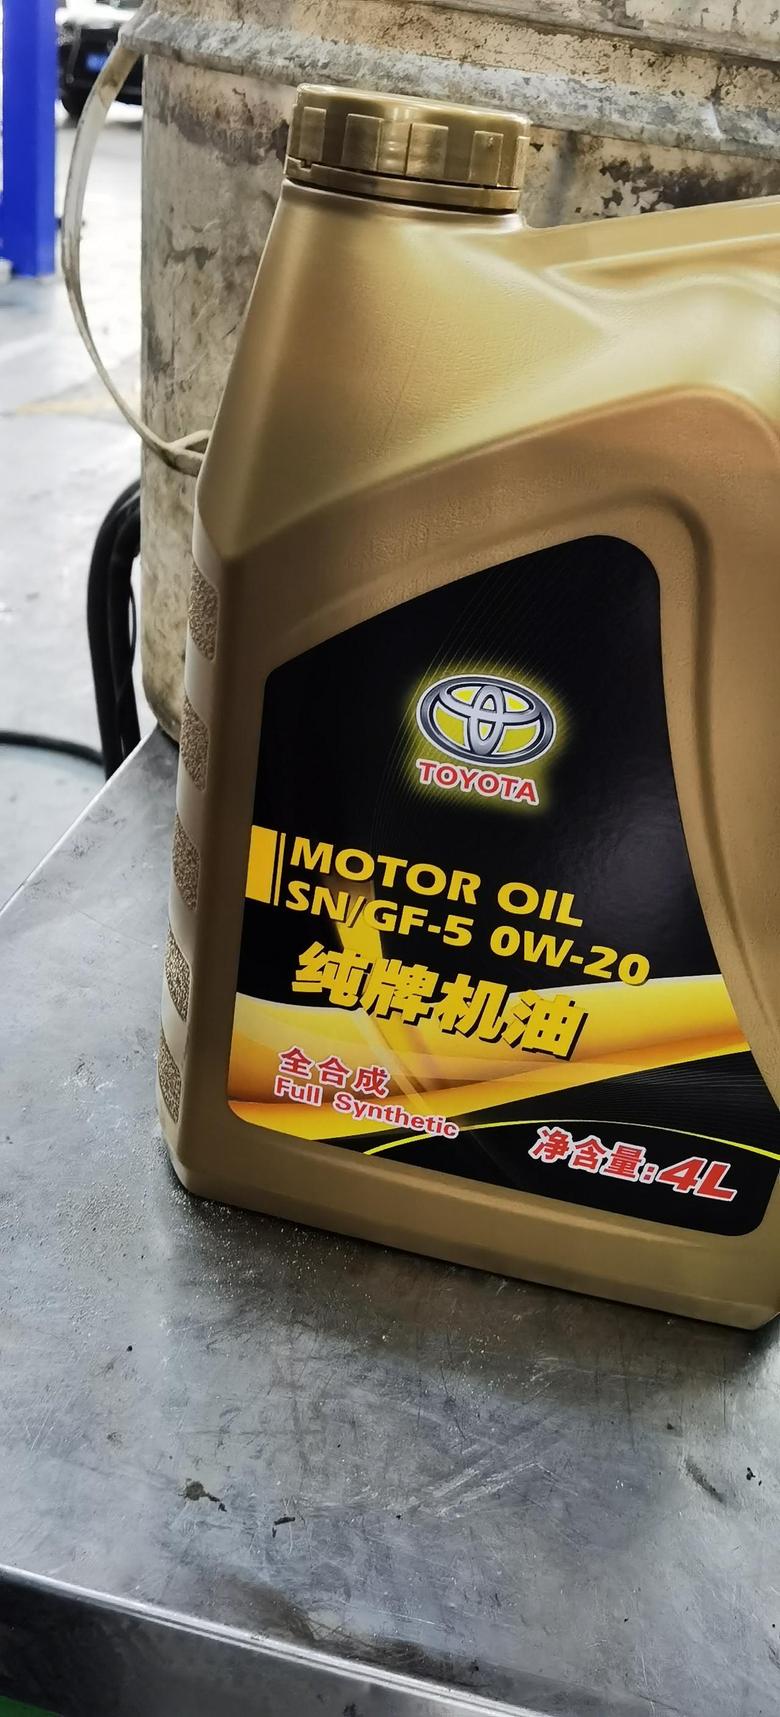 亚洲龙 保养时候拍的，车型2.5燃油尊贵，大家保养的时候4S点给用的什么标号的机油？